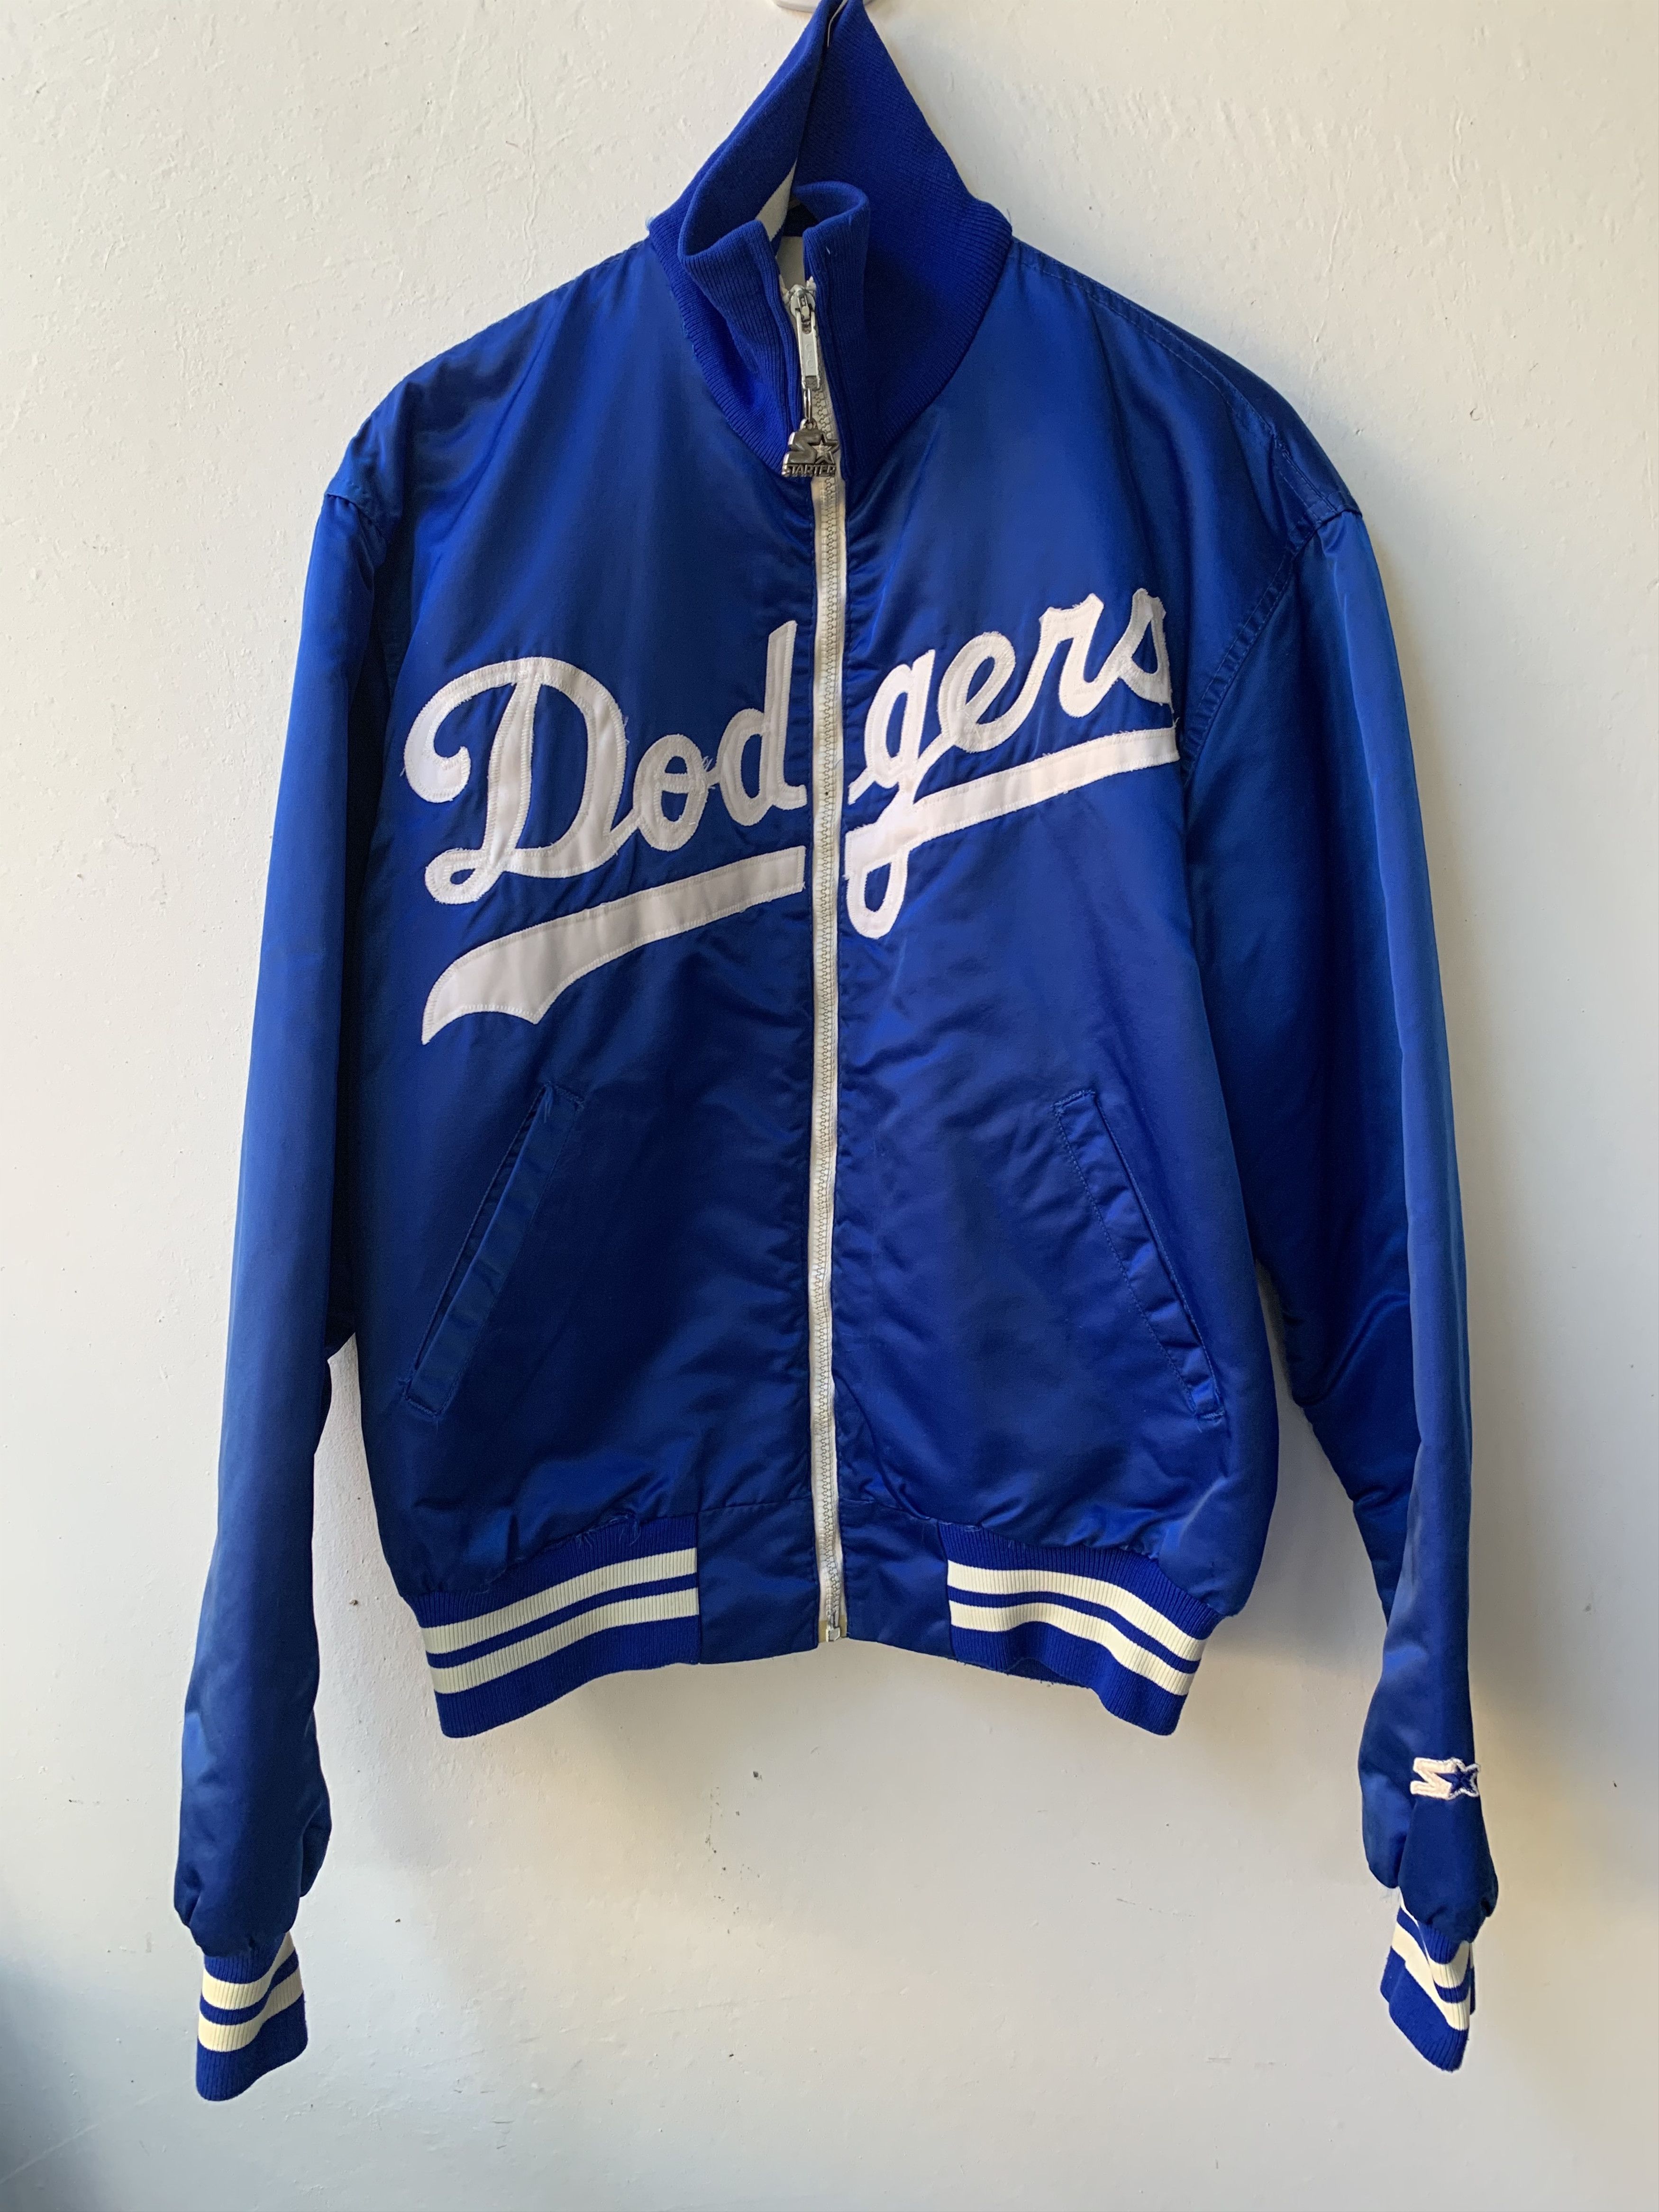 STARTER, Jackets & Coats, Vintage Dodgers Jacket Starter Xl 99s 1980s